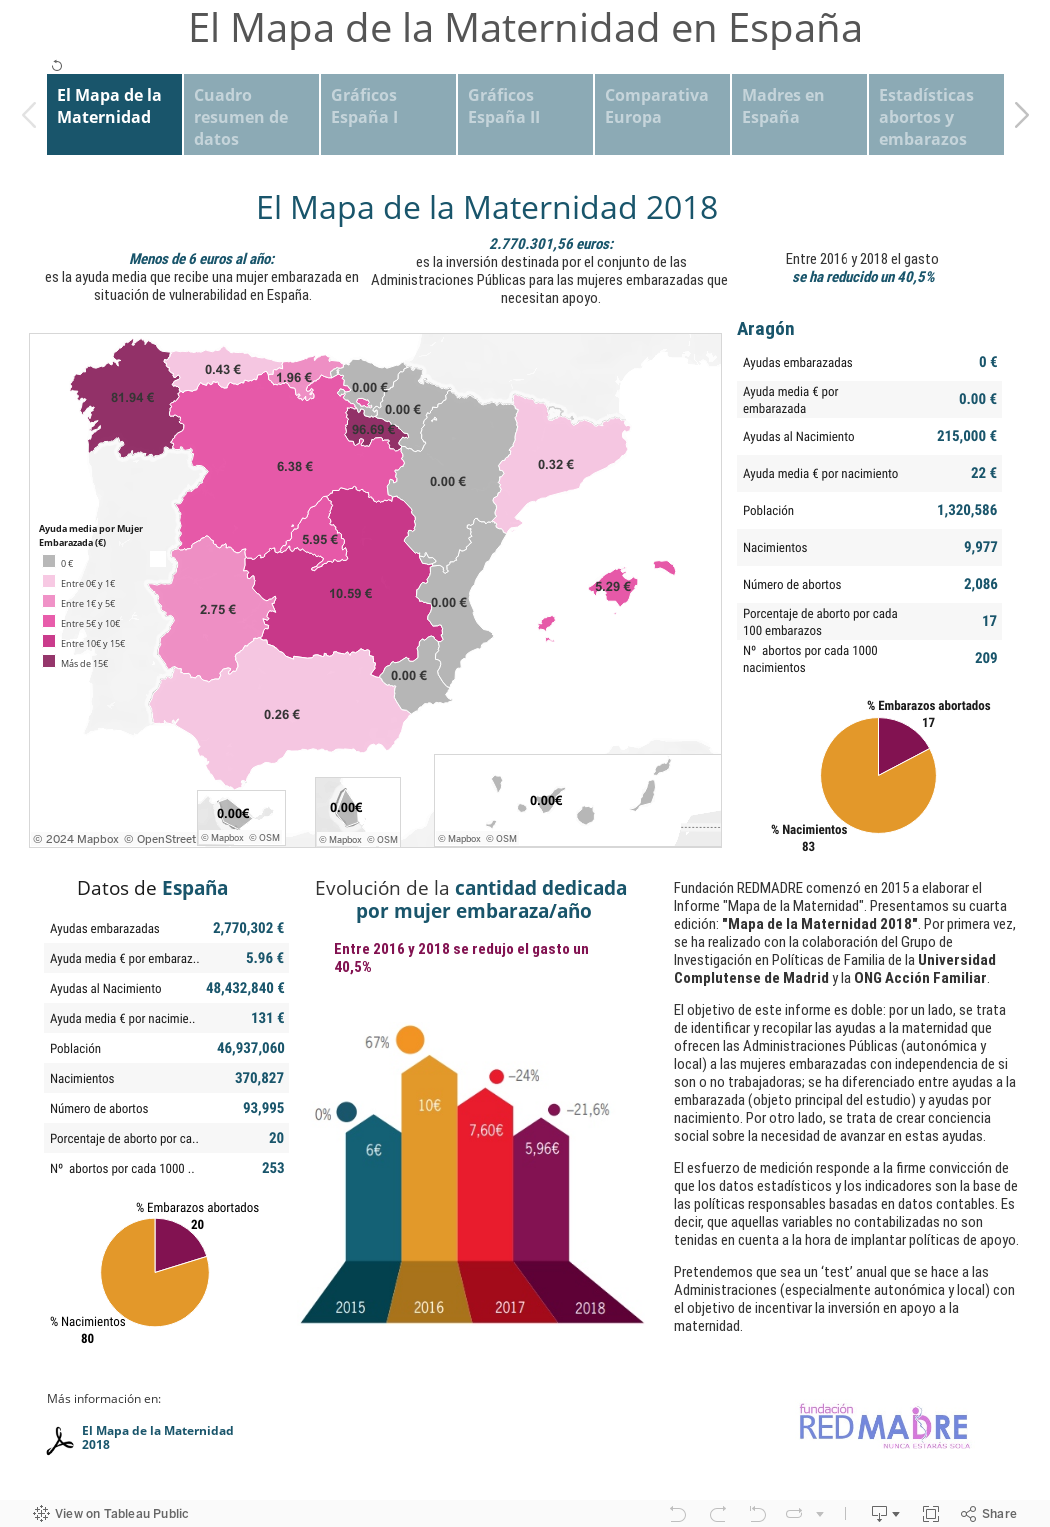 El Mapa de la Maternidad en España 